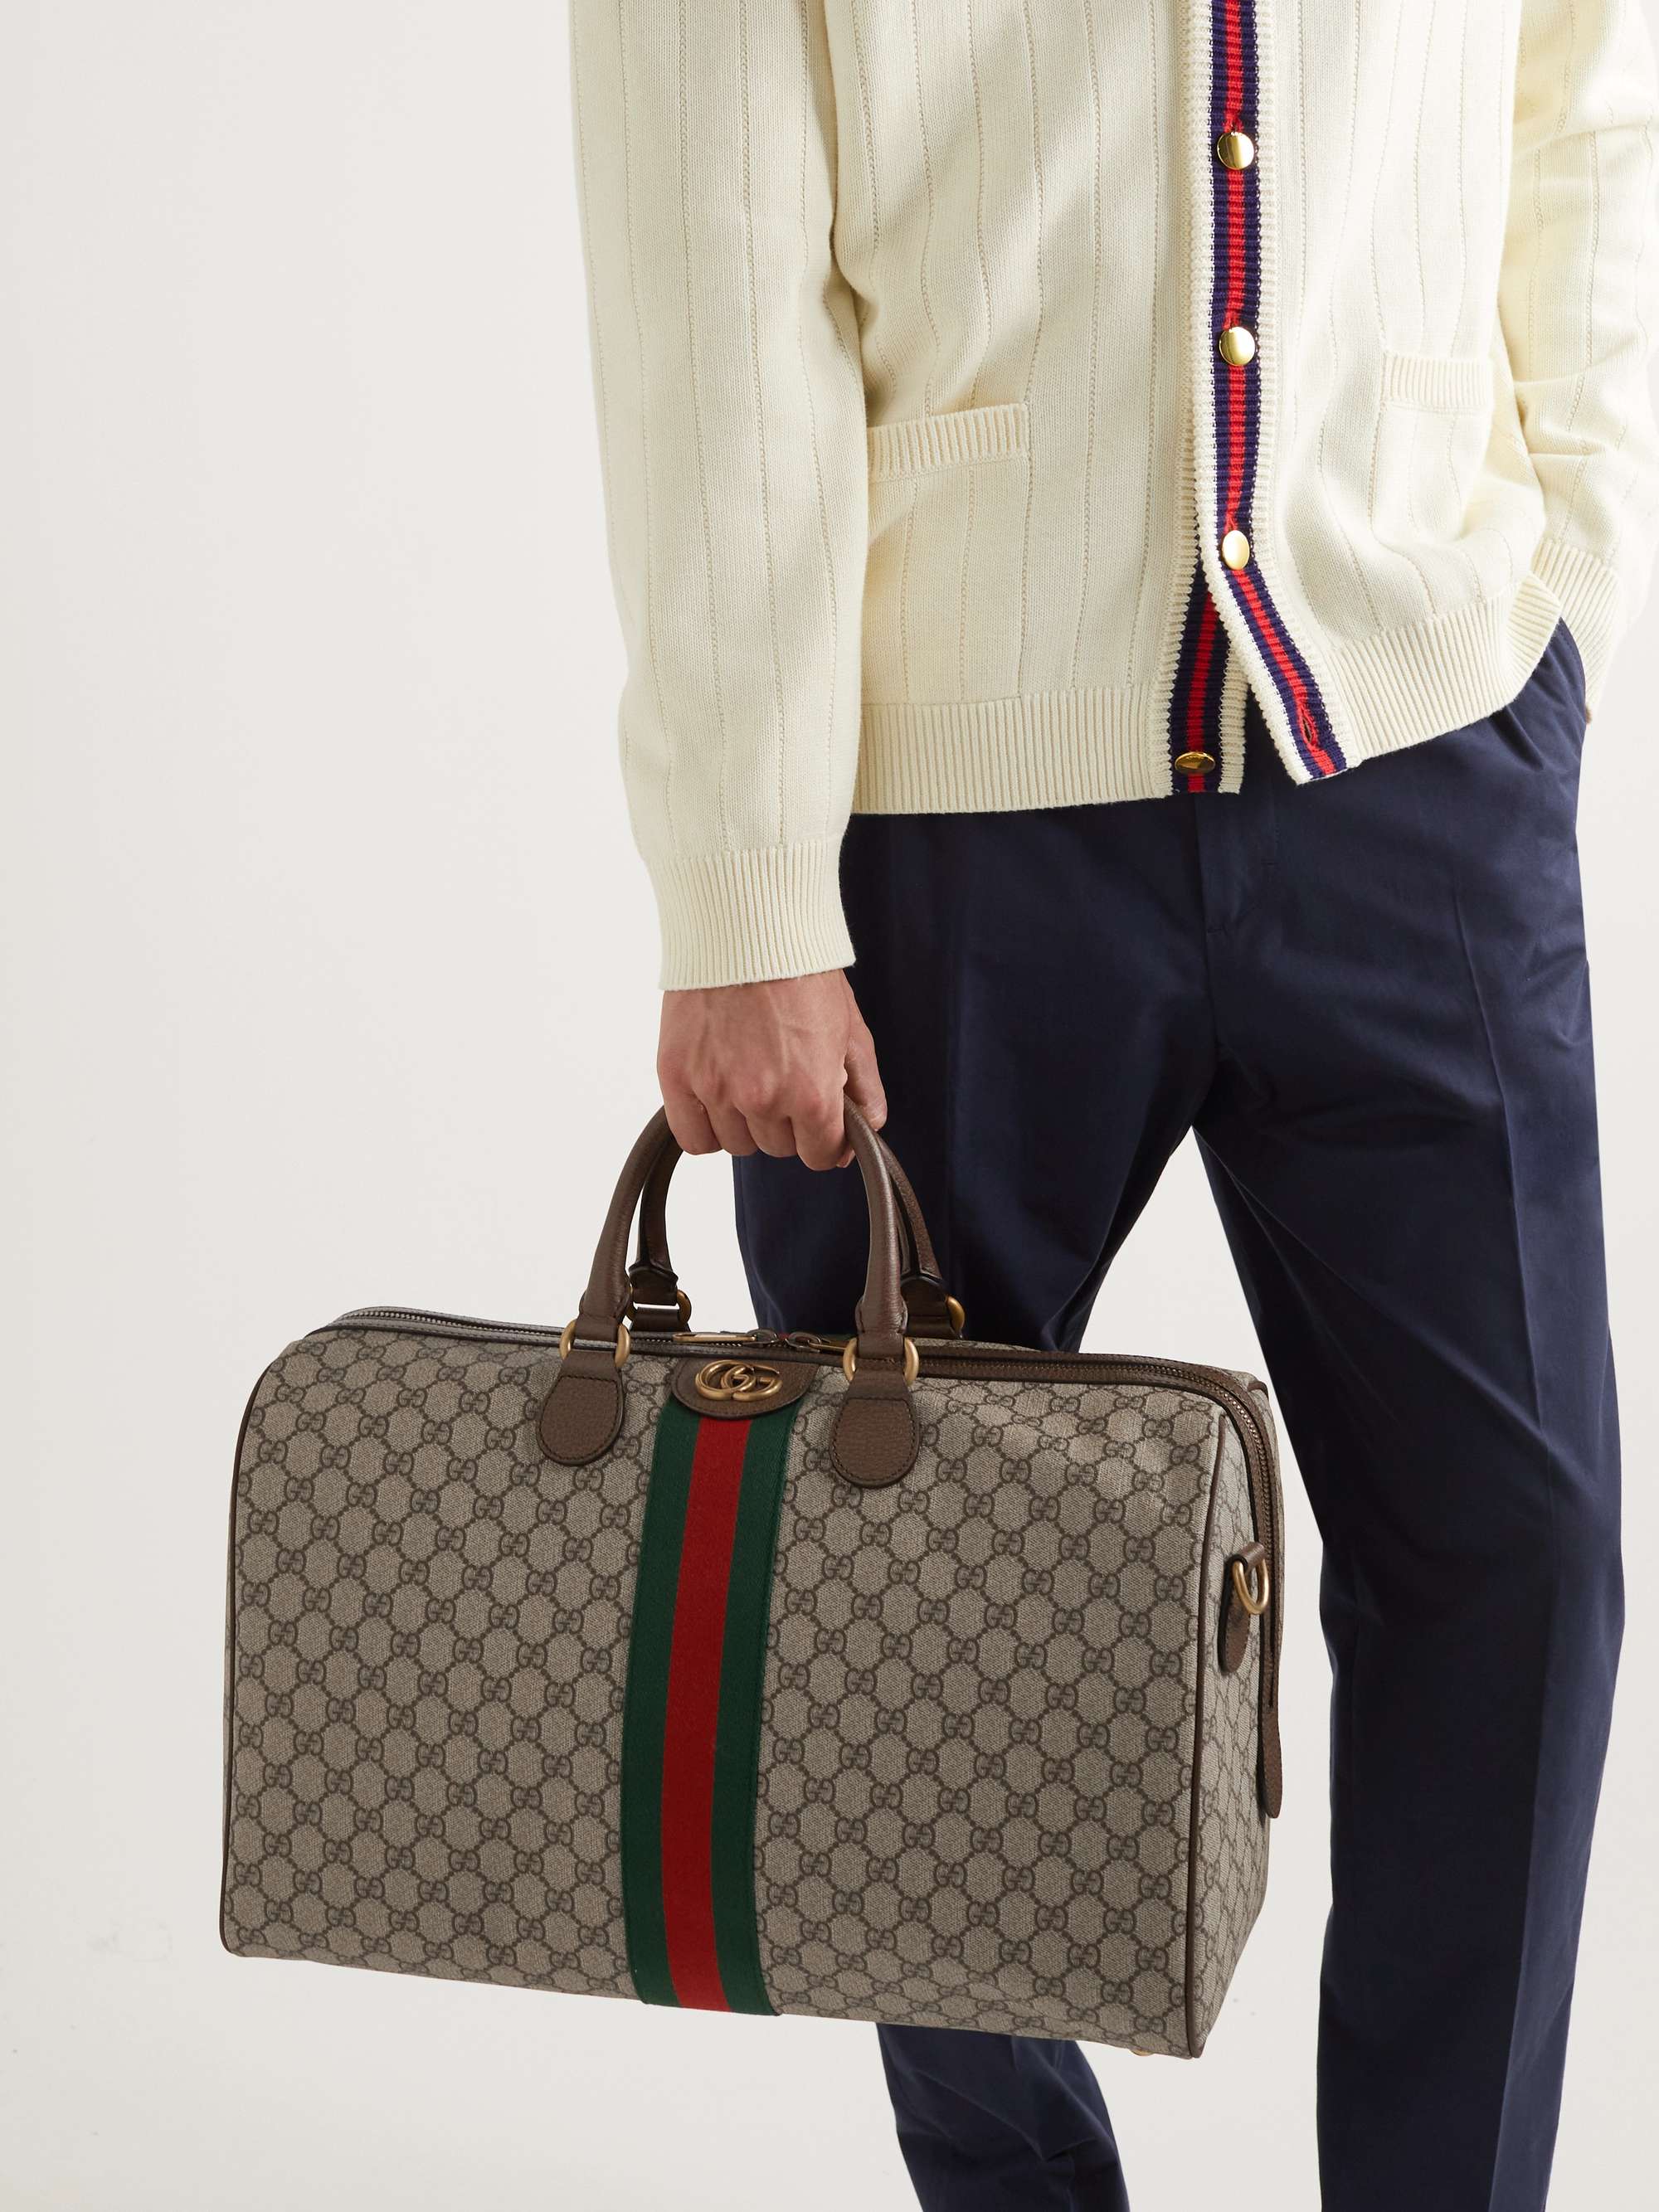 Gucci Savoy Medium Canvas Duffel Bag in Beige - Gucci